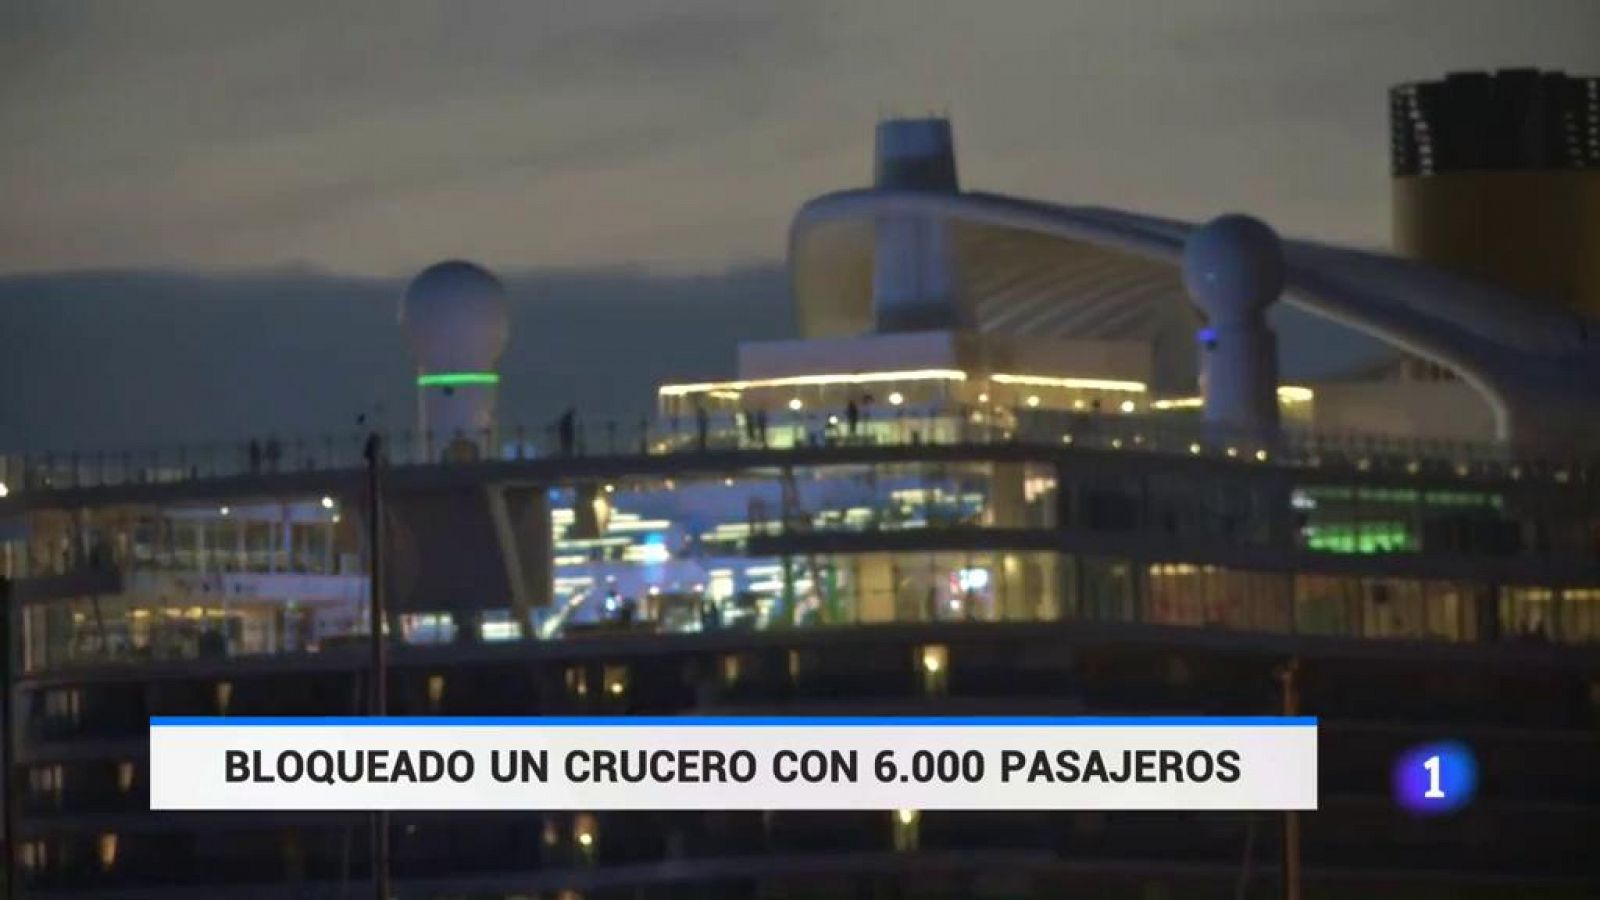 Italia descarta el caso de coronavirus en el crucero bloqueado en Civitavecchia